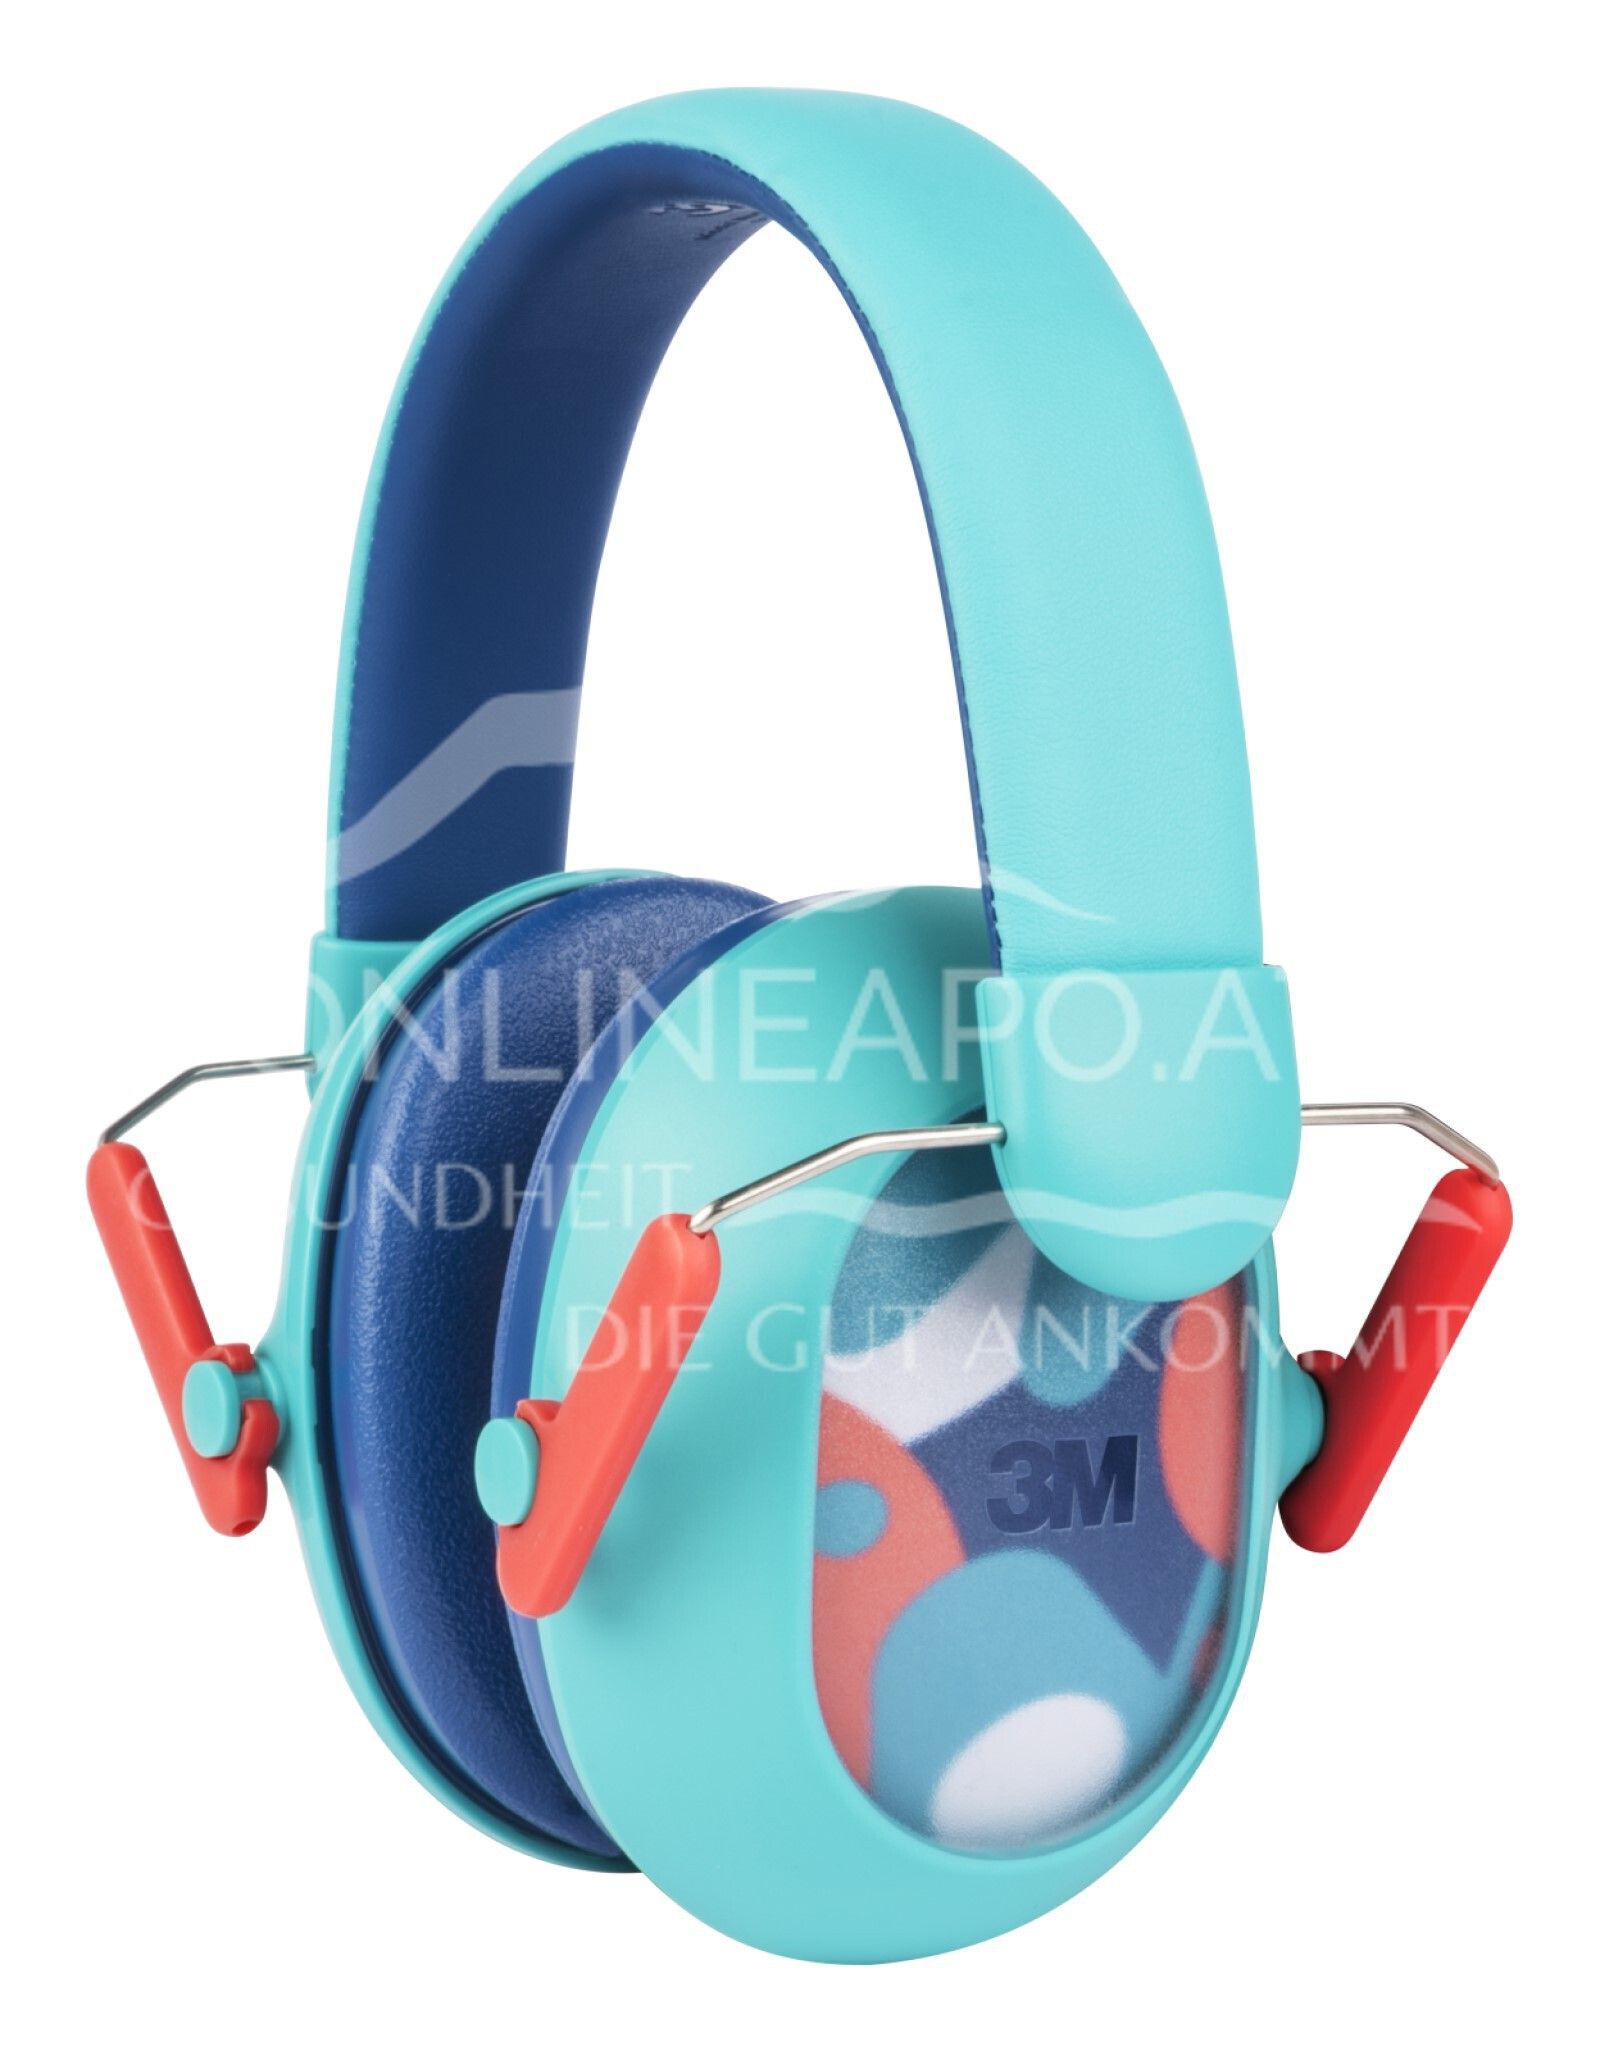 3M™Gehörschutz für Kinder mit Gehörschutz PKIDSP-TEAL-E, türkis (87-98 dB)